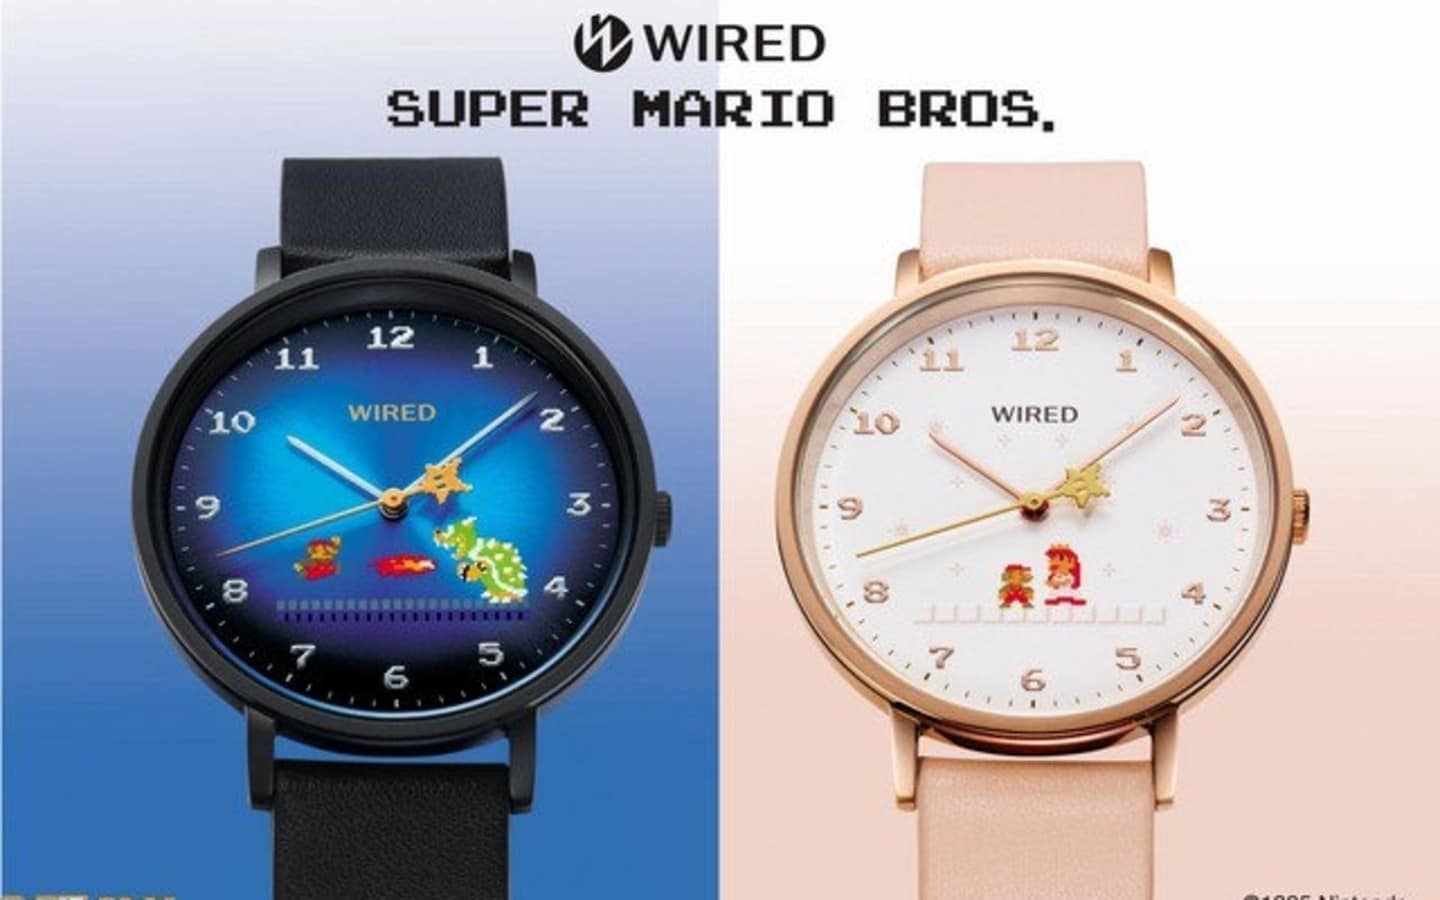 Estos relojes de pulsera de Super Mario Bros. llegarán a Japón el 8 de diciembre